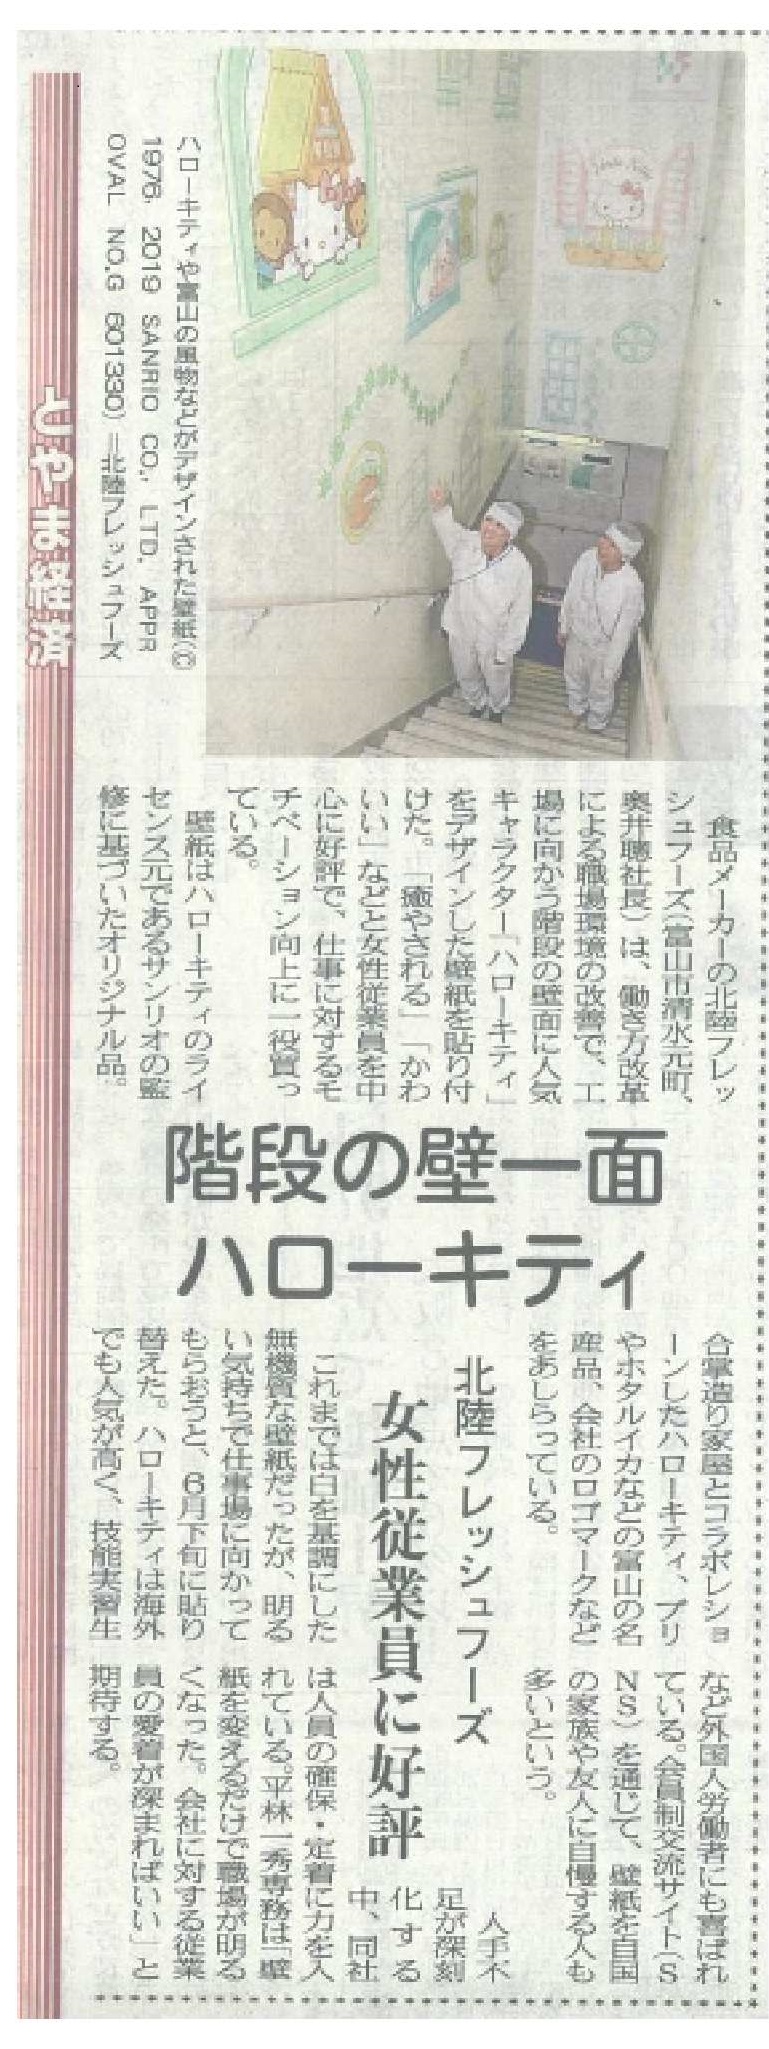 ハローキティデザインの壁紙が北日本新聞に取り上げられました 新着情報一覧 株式会社 北陸フレッシュフーズ